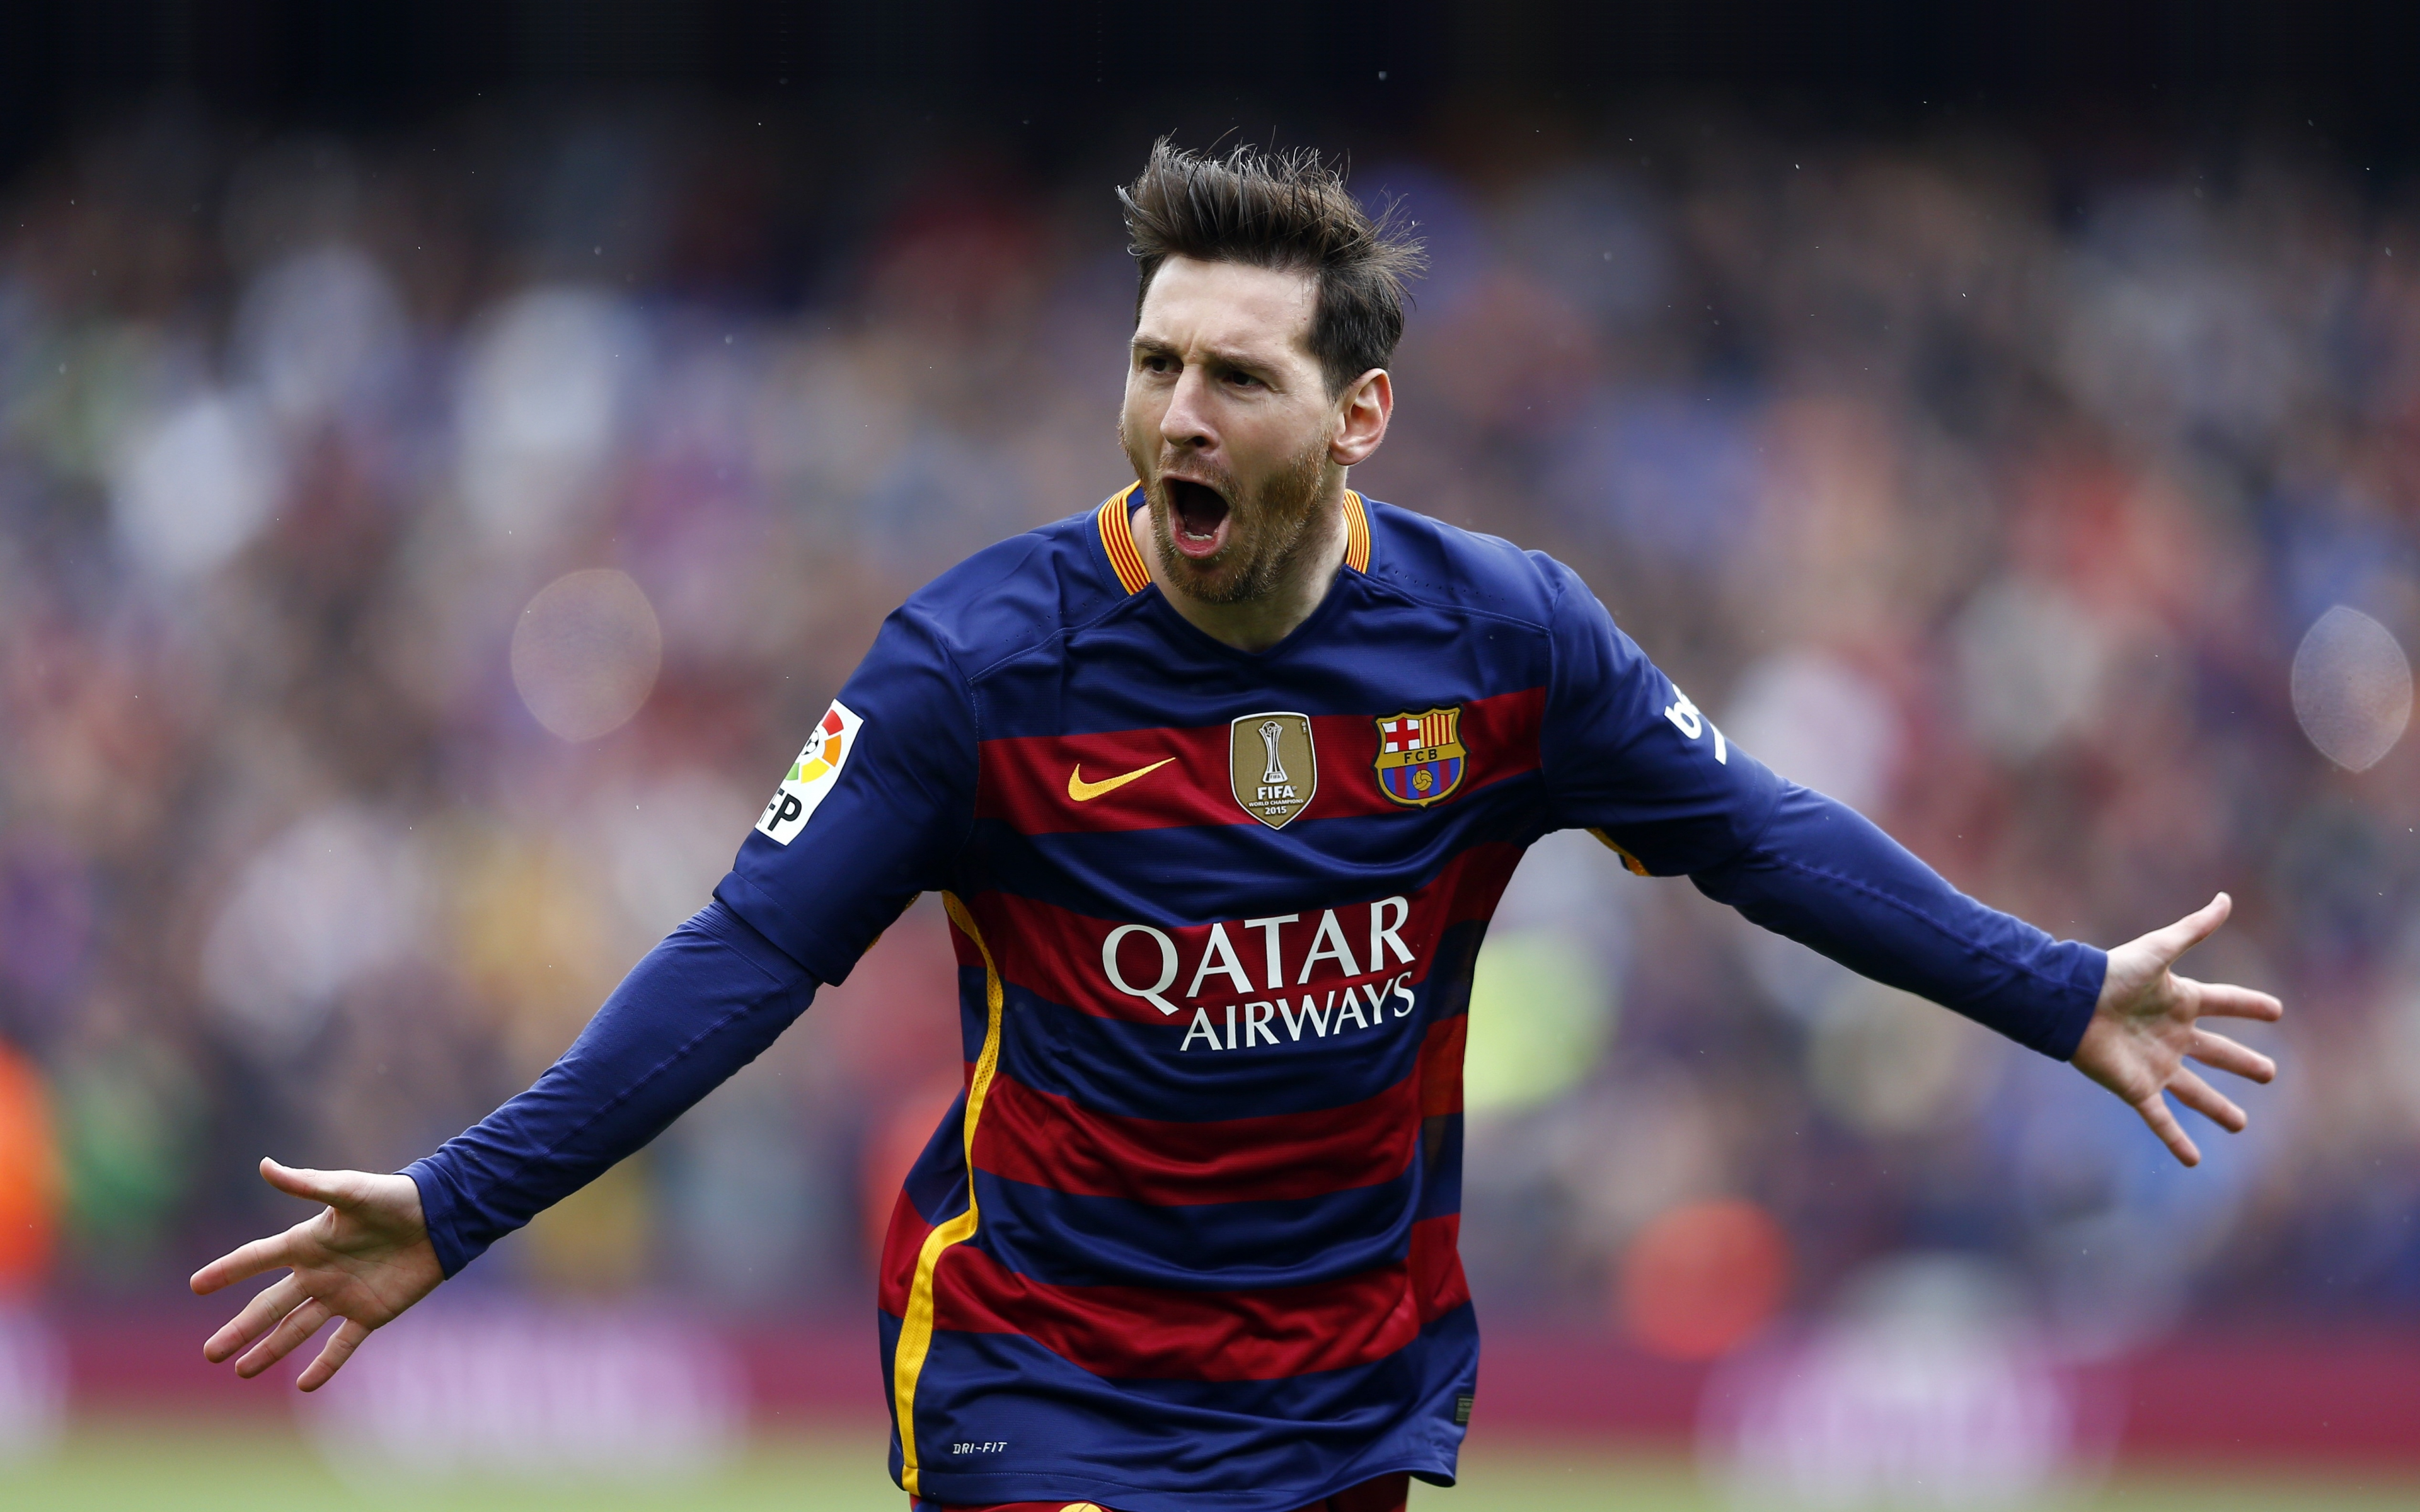 Tận hưởng sự nổi tiếng và dấu ấn của Lionel Messi với Lionel Messi celebrity wallpaper - chắc chắn sẽ khiến bạn phấn khích và cảm thấy thật đam mê.